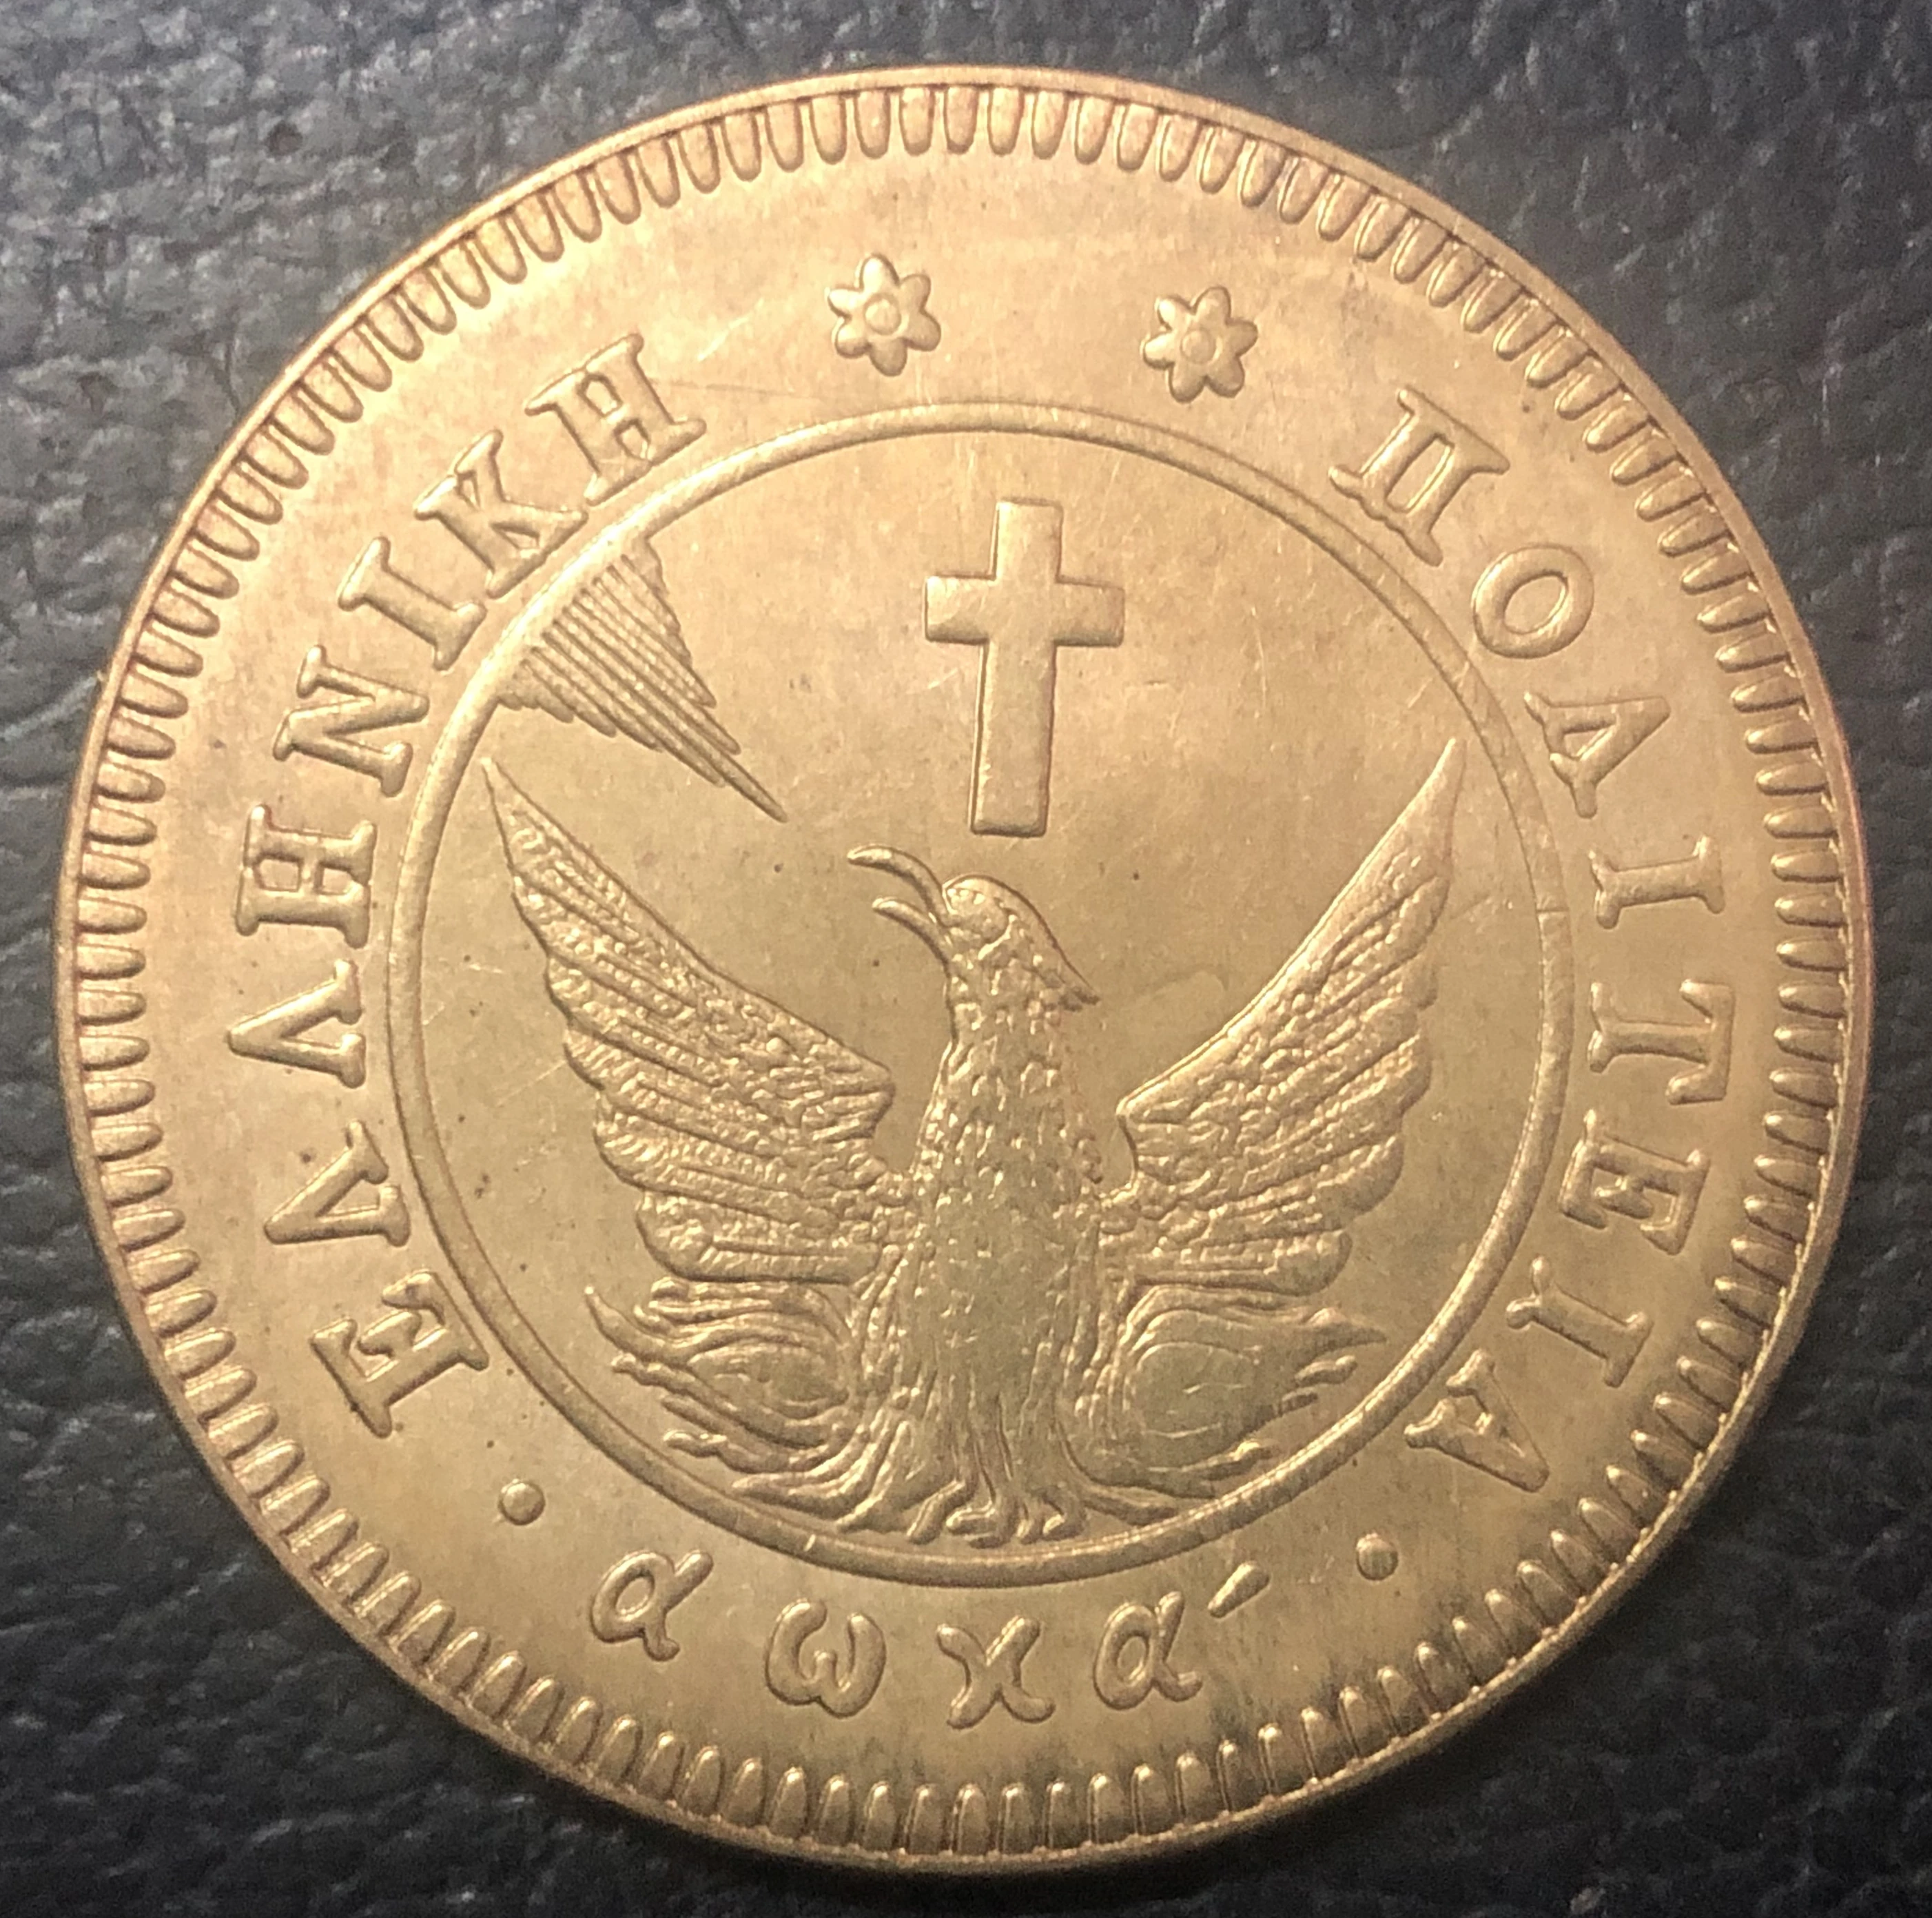 1830 Greece 10 Lepta-Loannis capodistras медь копия редкая монета